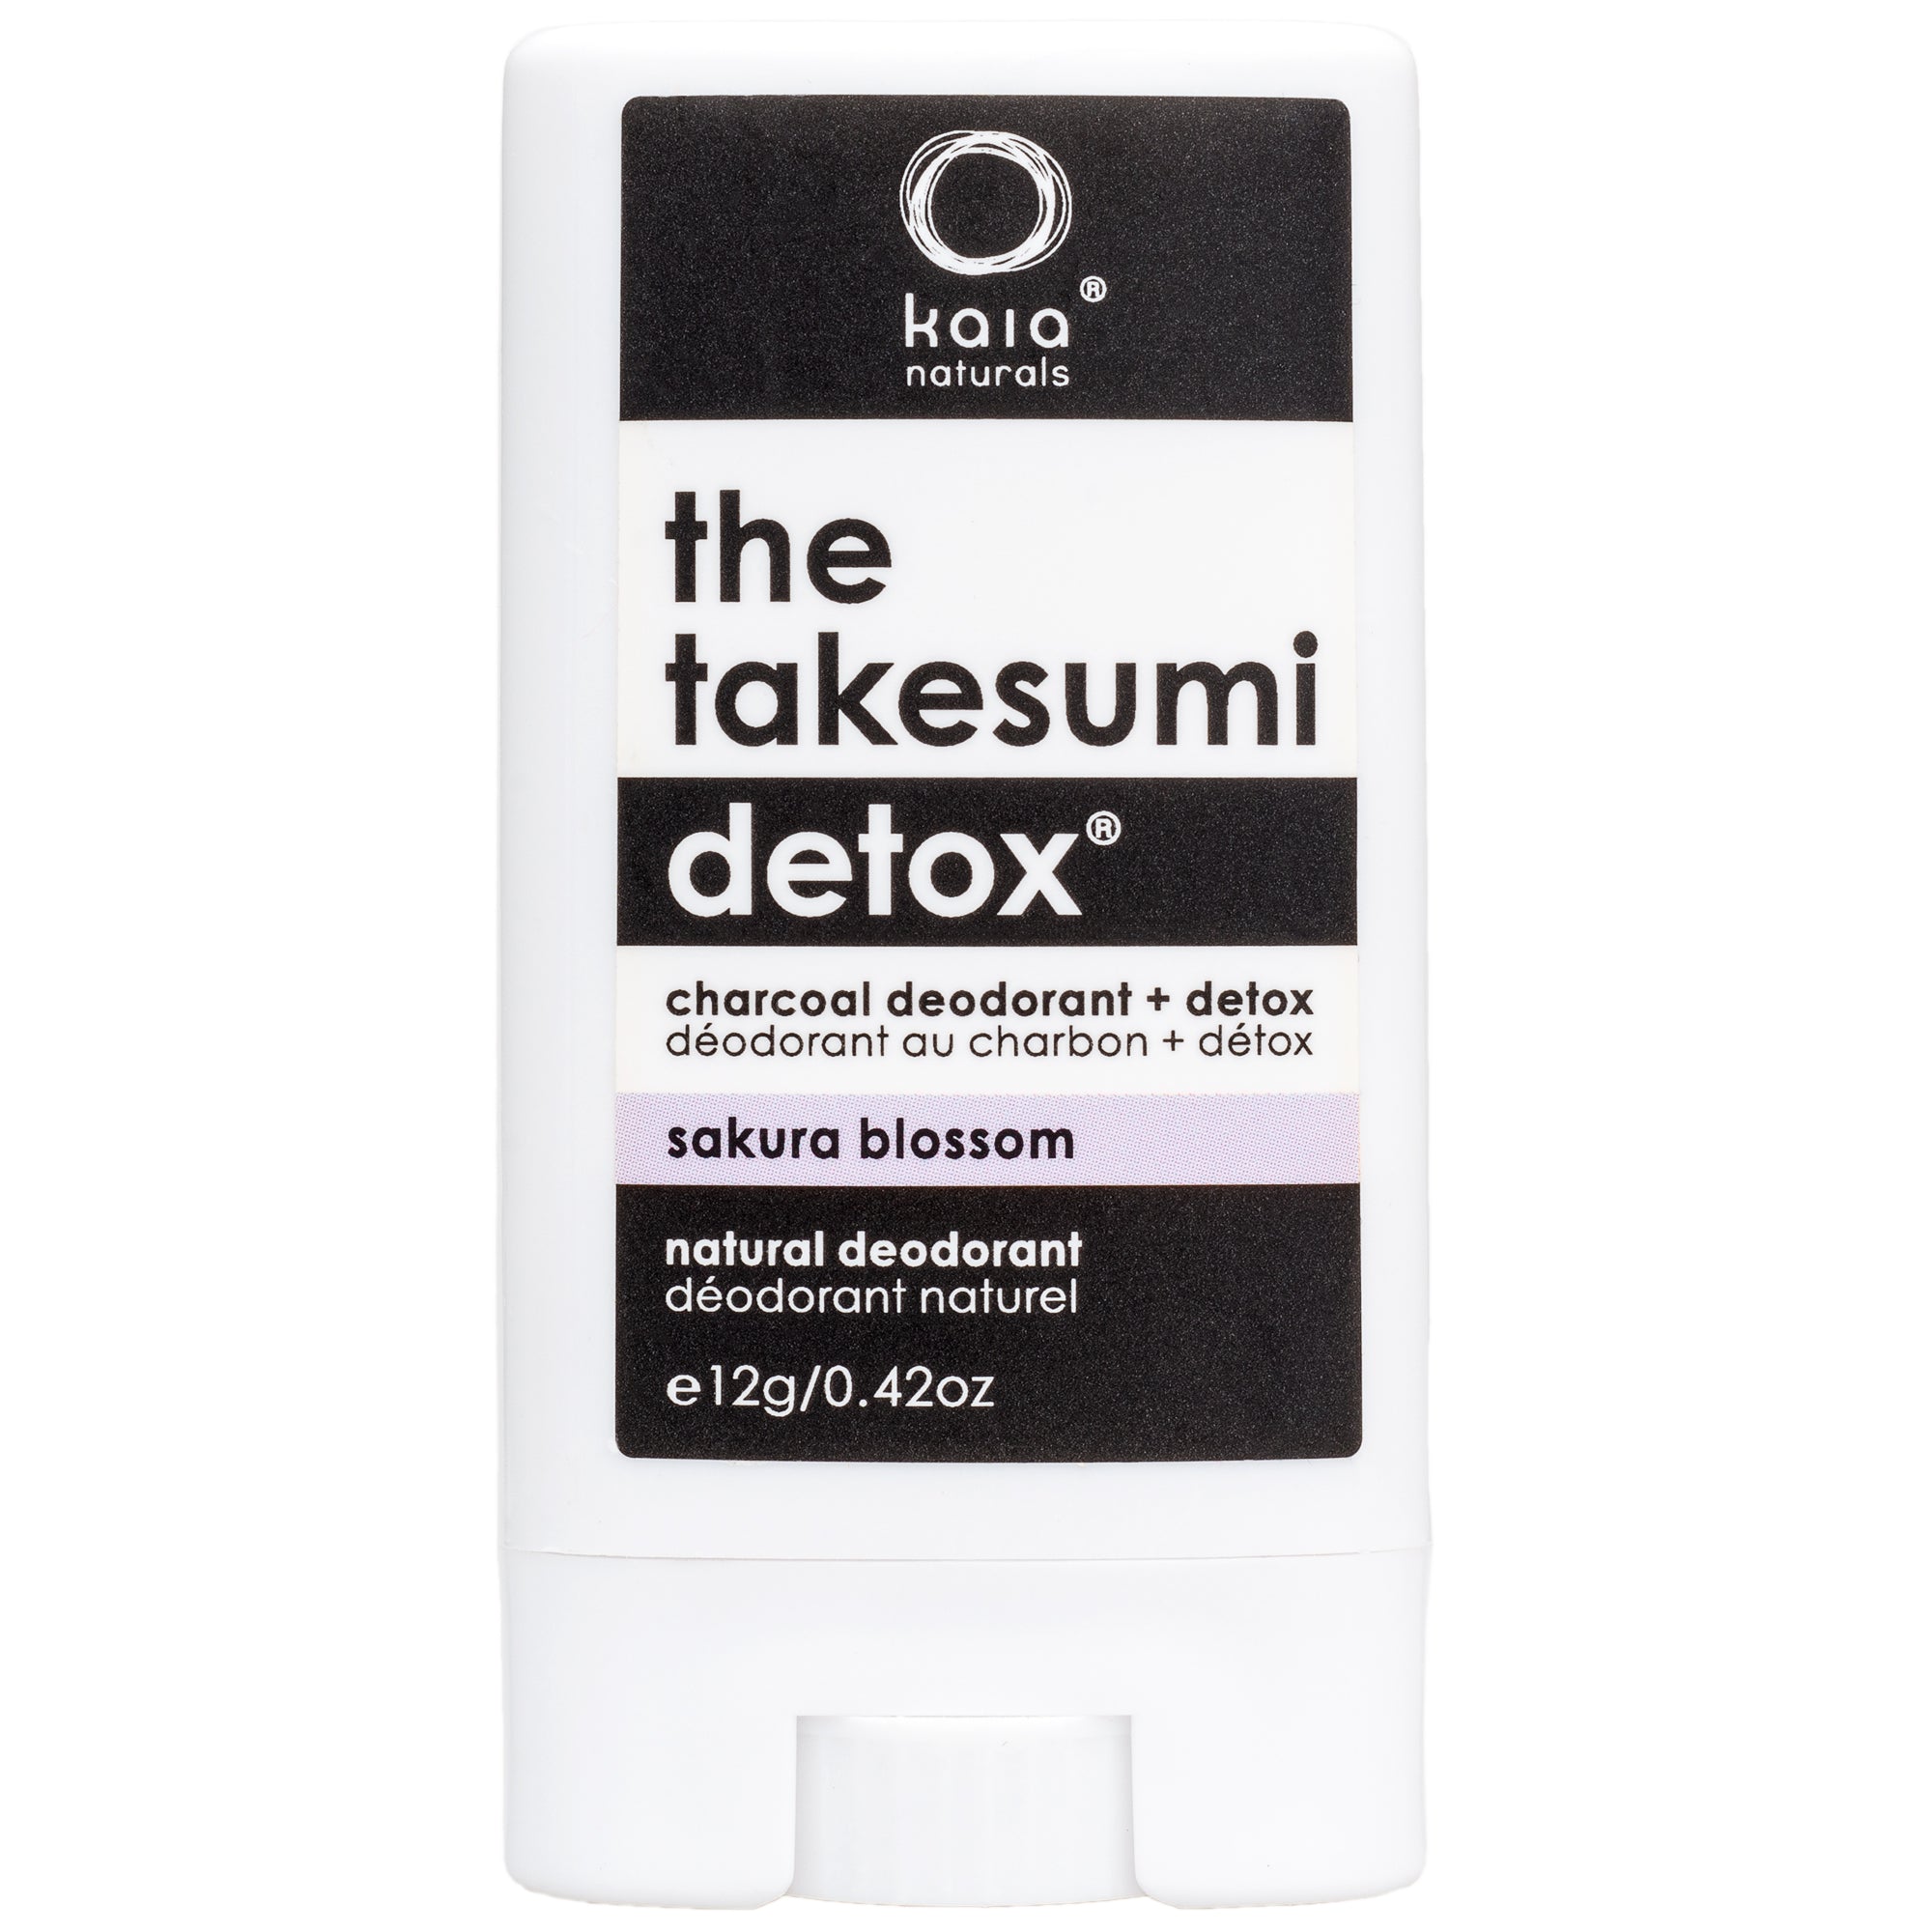 The Takesumi Detox Charcoal Deodorant and Detox Sakura Blossom - Travel